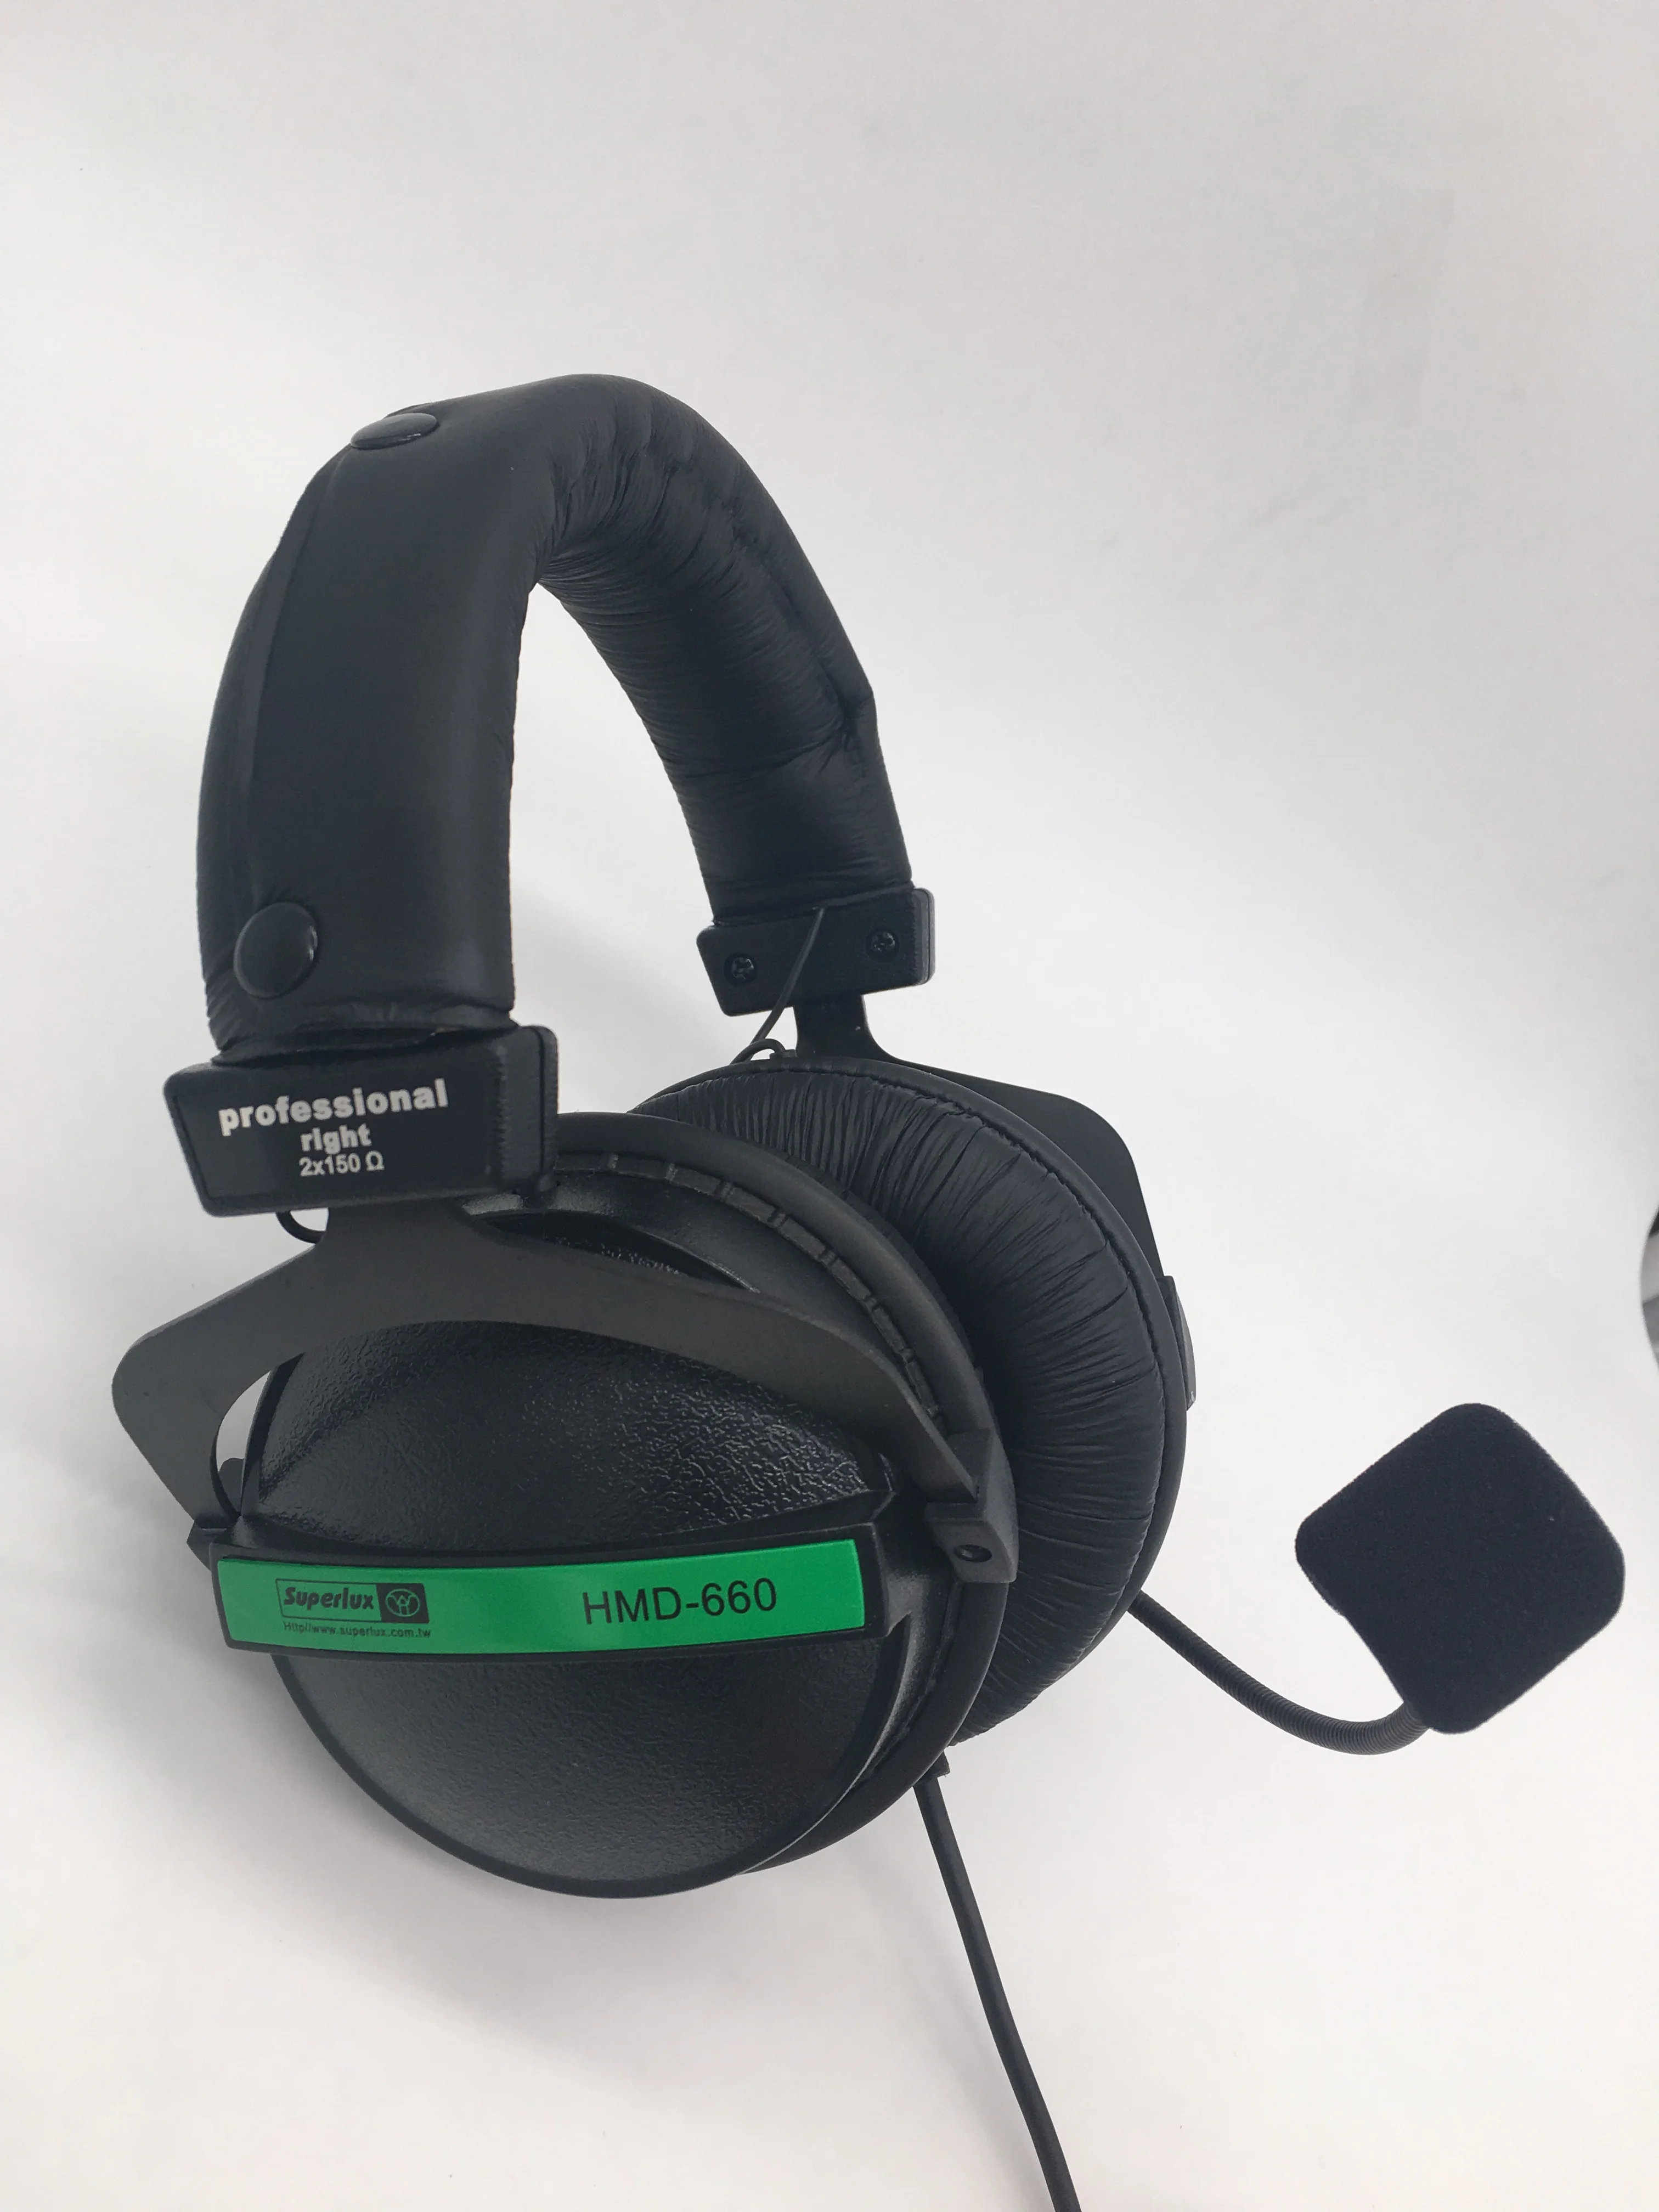 Профессиональные стереонаушники Superlux HMD660E с динамическим микрофоном для прямой трансляции, диджейской музыки, настольной видеоконференции